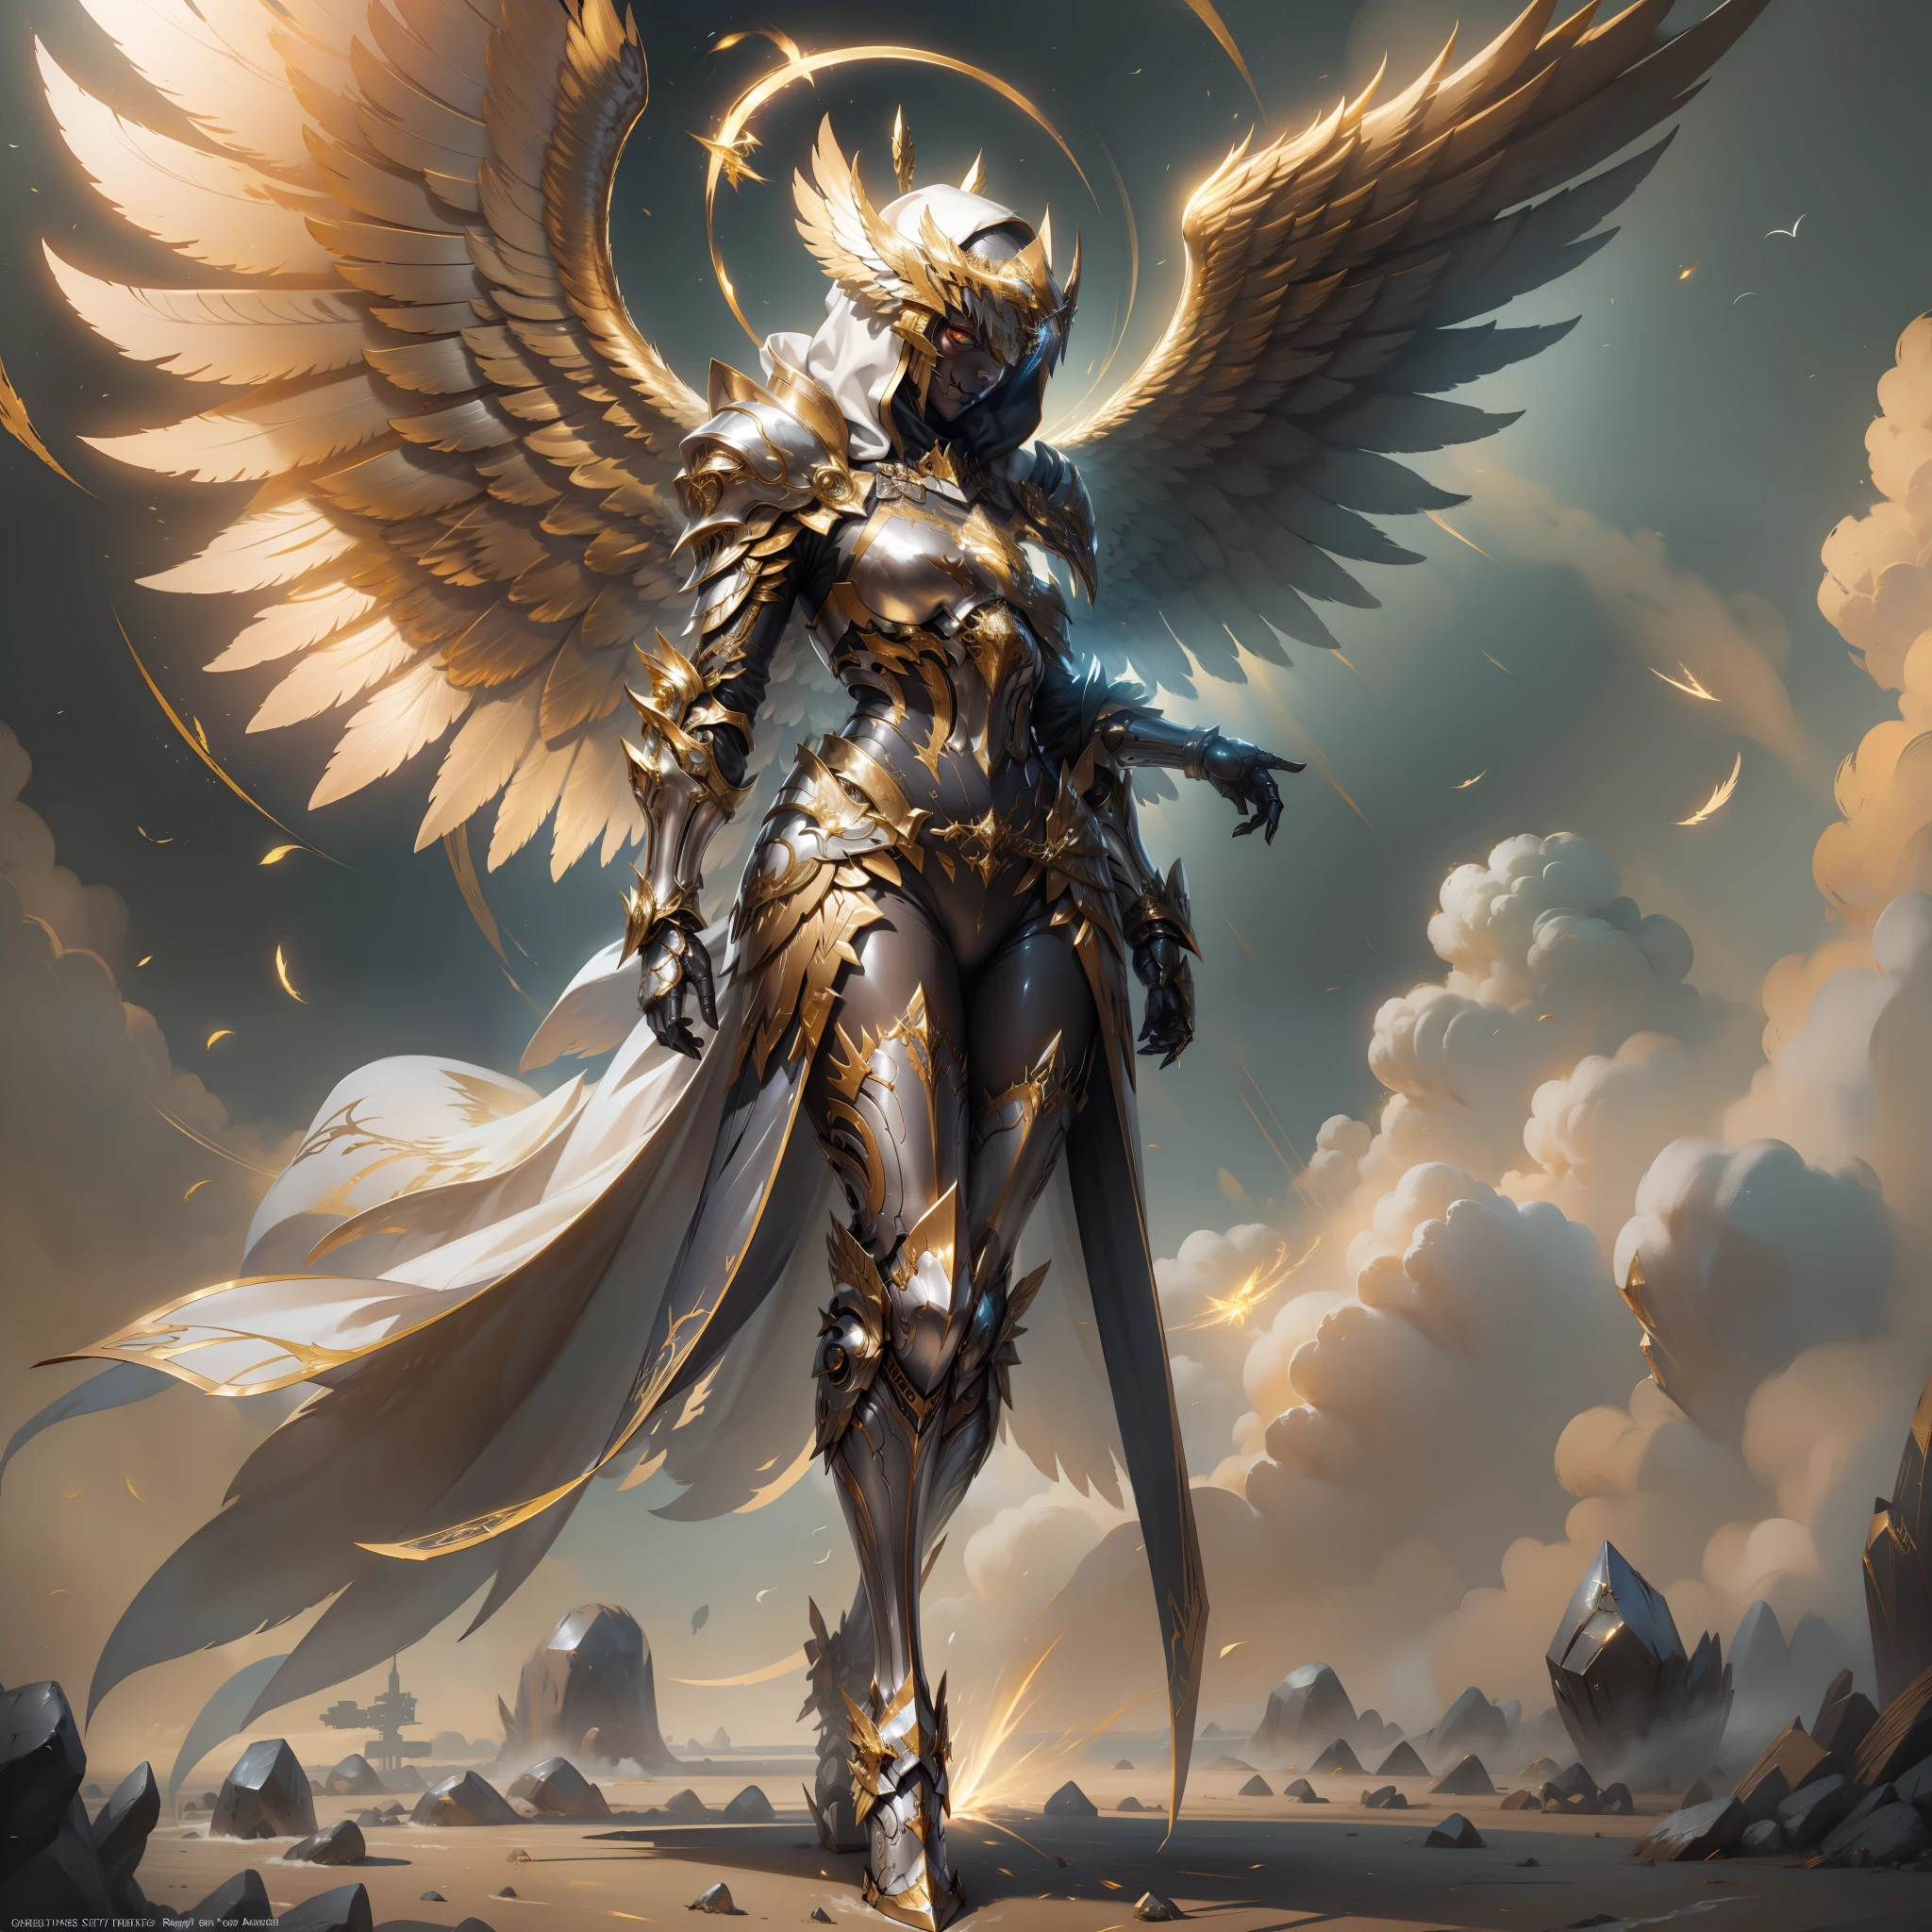 黄金铠甲天使, 能量构成的翅膀, 金属你好, 没有脸, 连帽的, 金子, 幻想, 概念艺术, 超现实, 格雷格·鲁特科斯基 (greg rutkowski) 的人物艺术